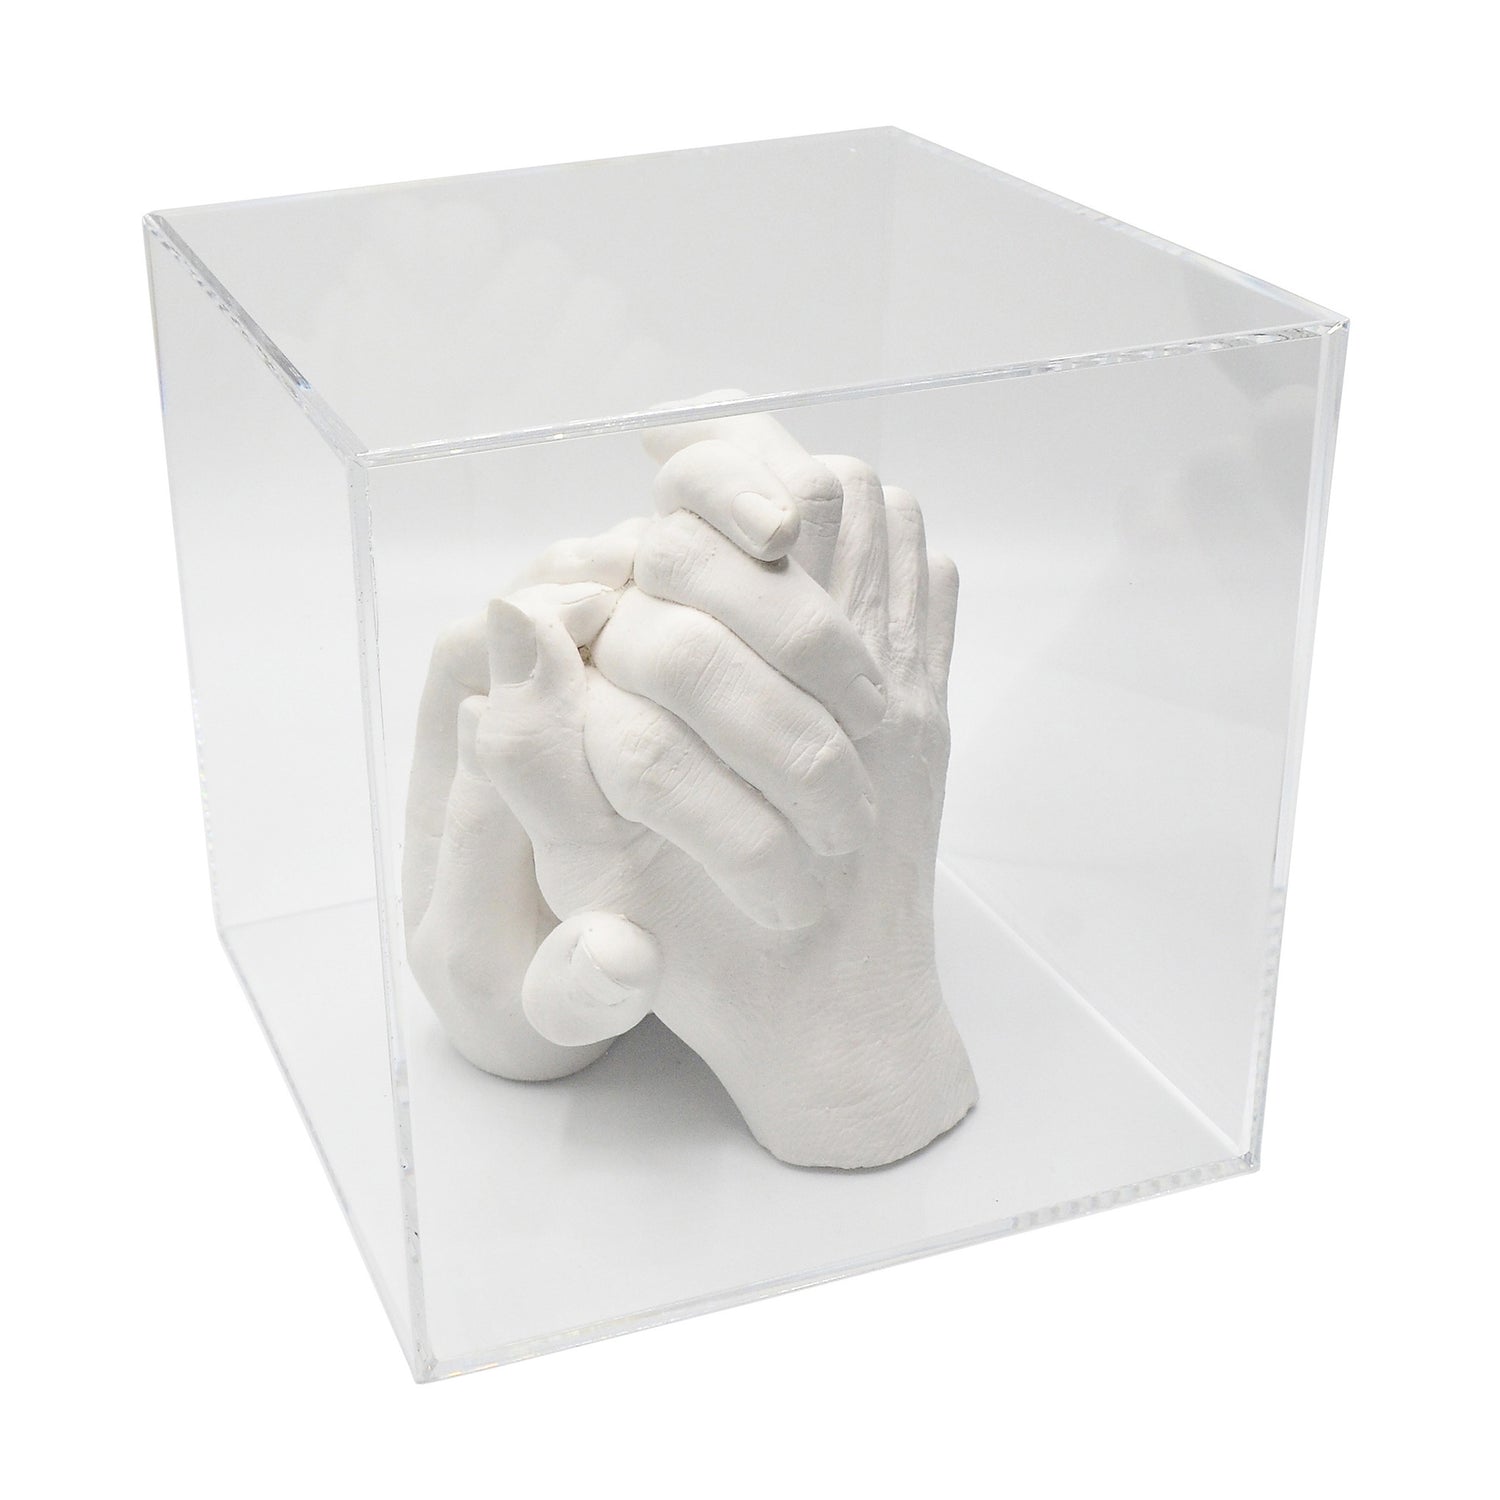 Kits moulage pour enfants, adolescents et adultes – 3D Hand Design